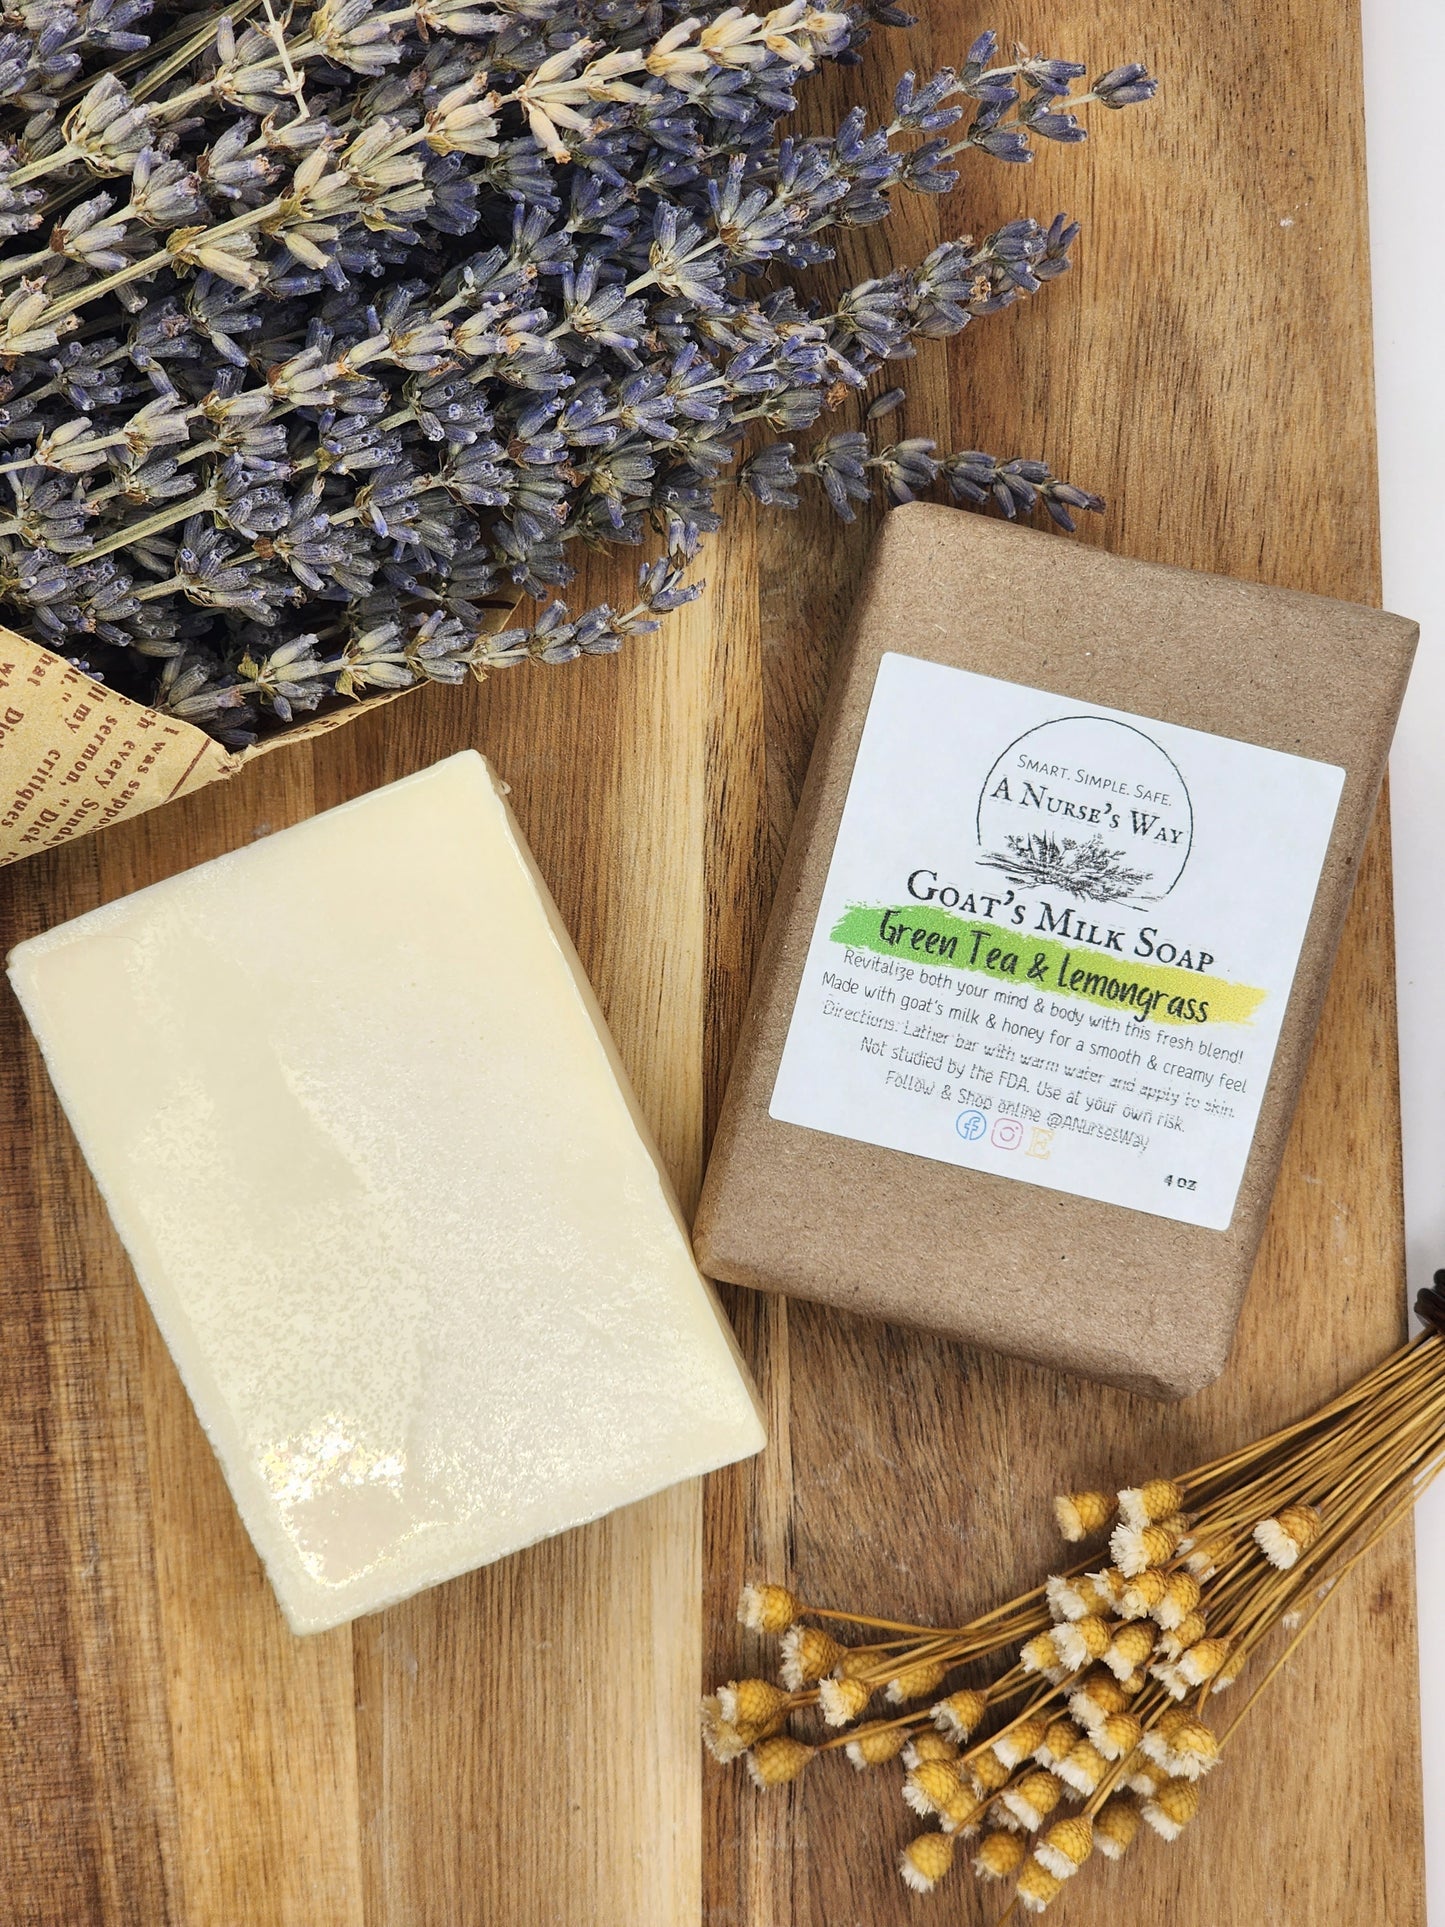 Green Tea & Lemongrass Goat's Milk Soap & Lotion